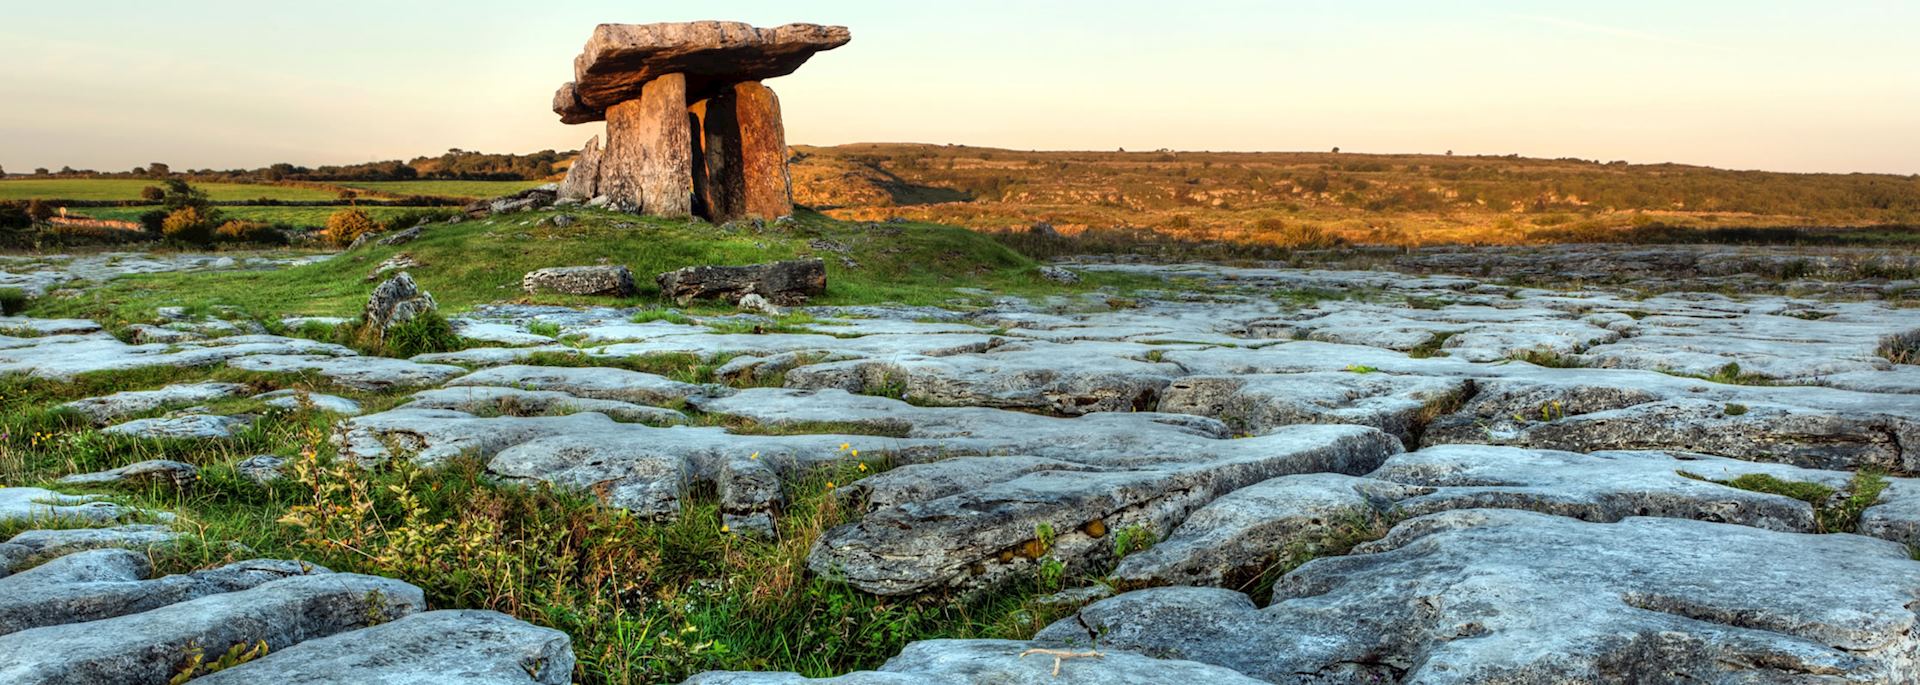 Poulnabrone dolmen, the Burren